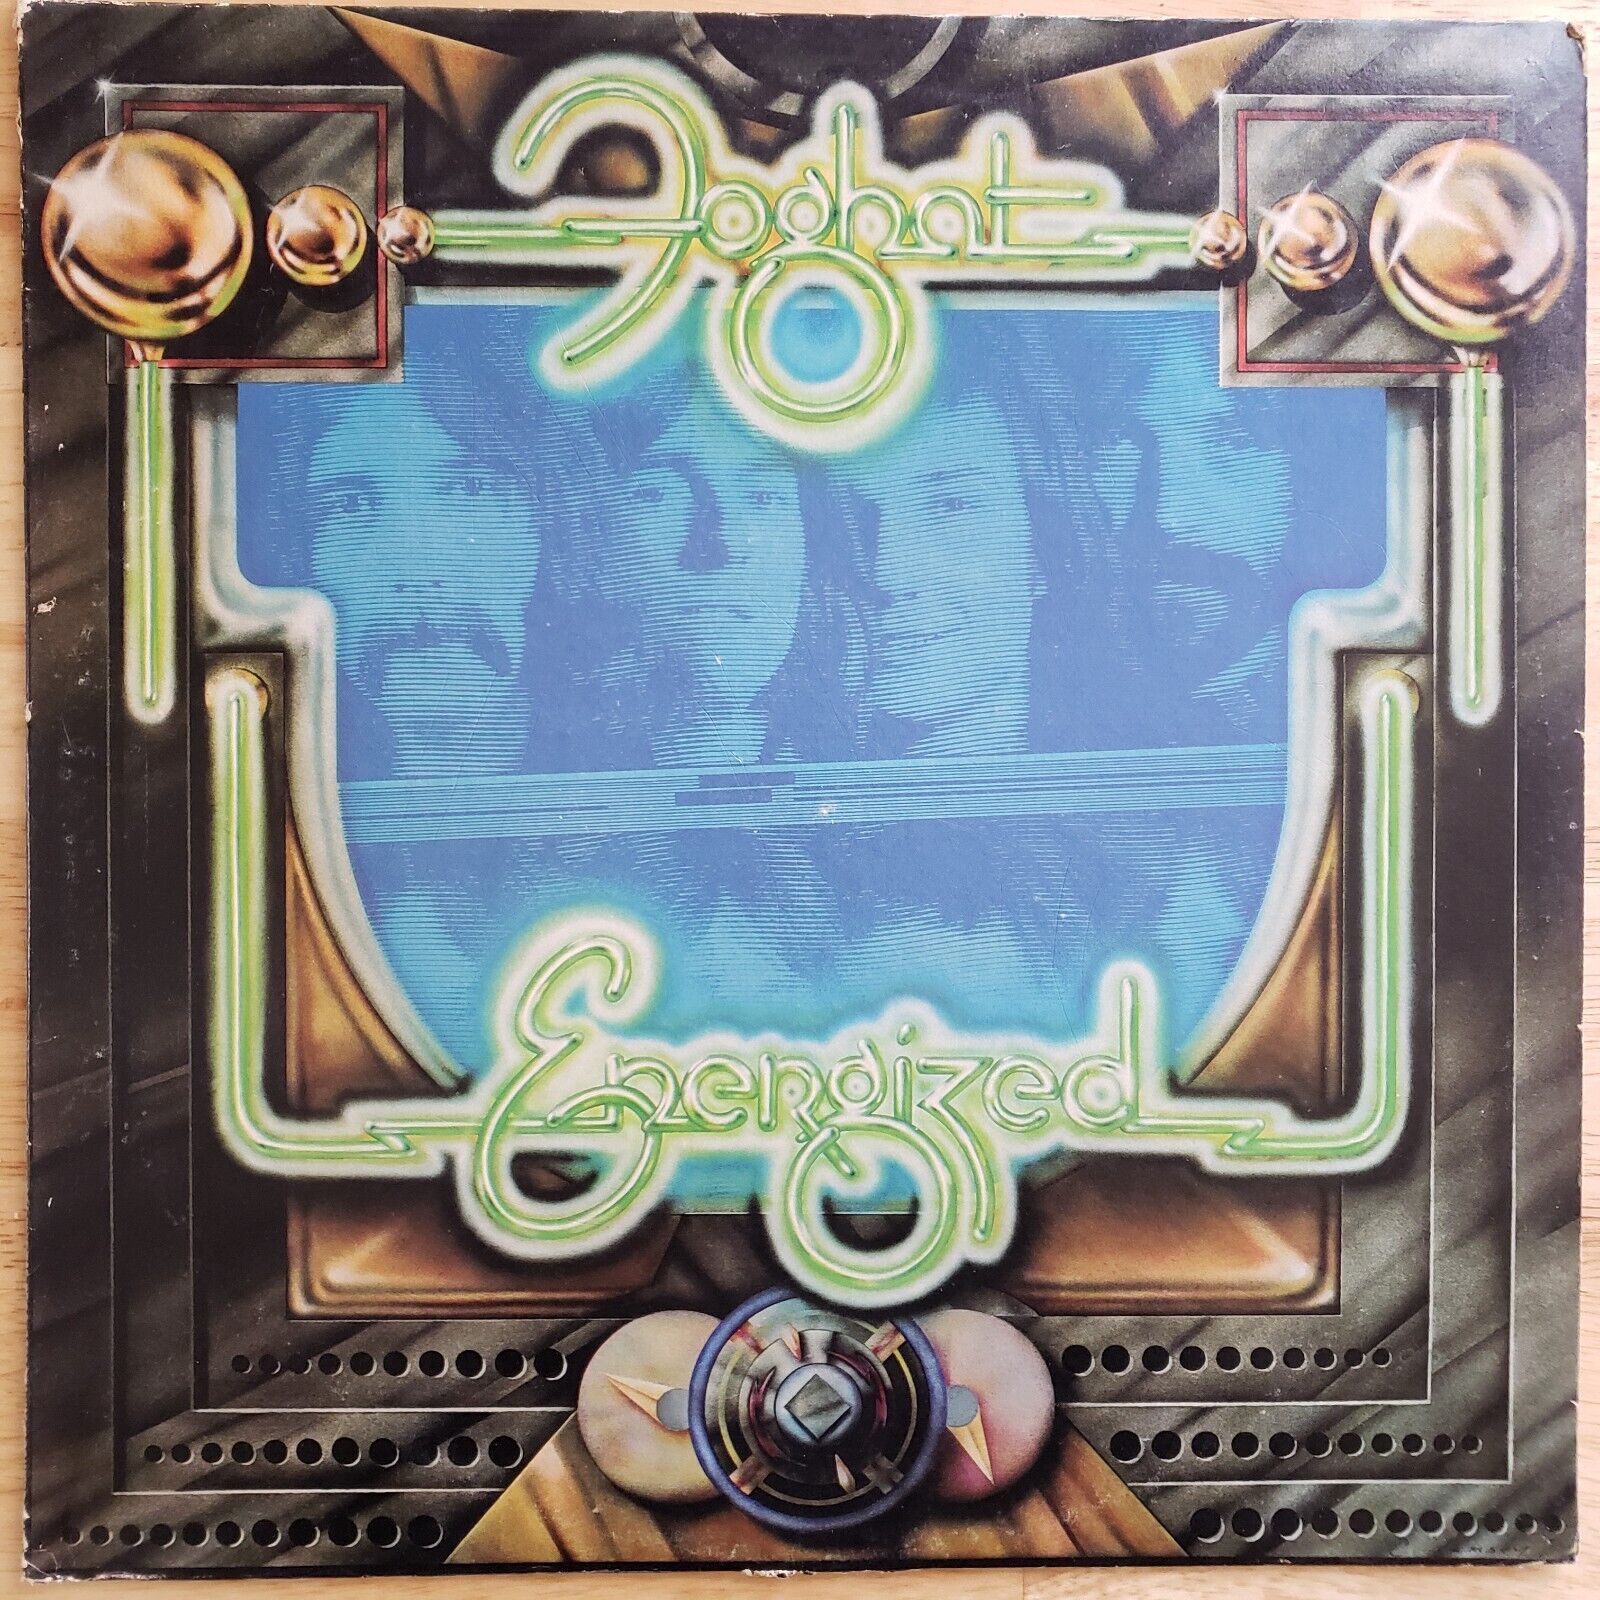 Foghat - Energized - Vinyl LP 1974 Bearsville BR 6950